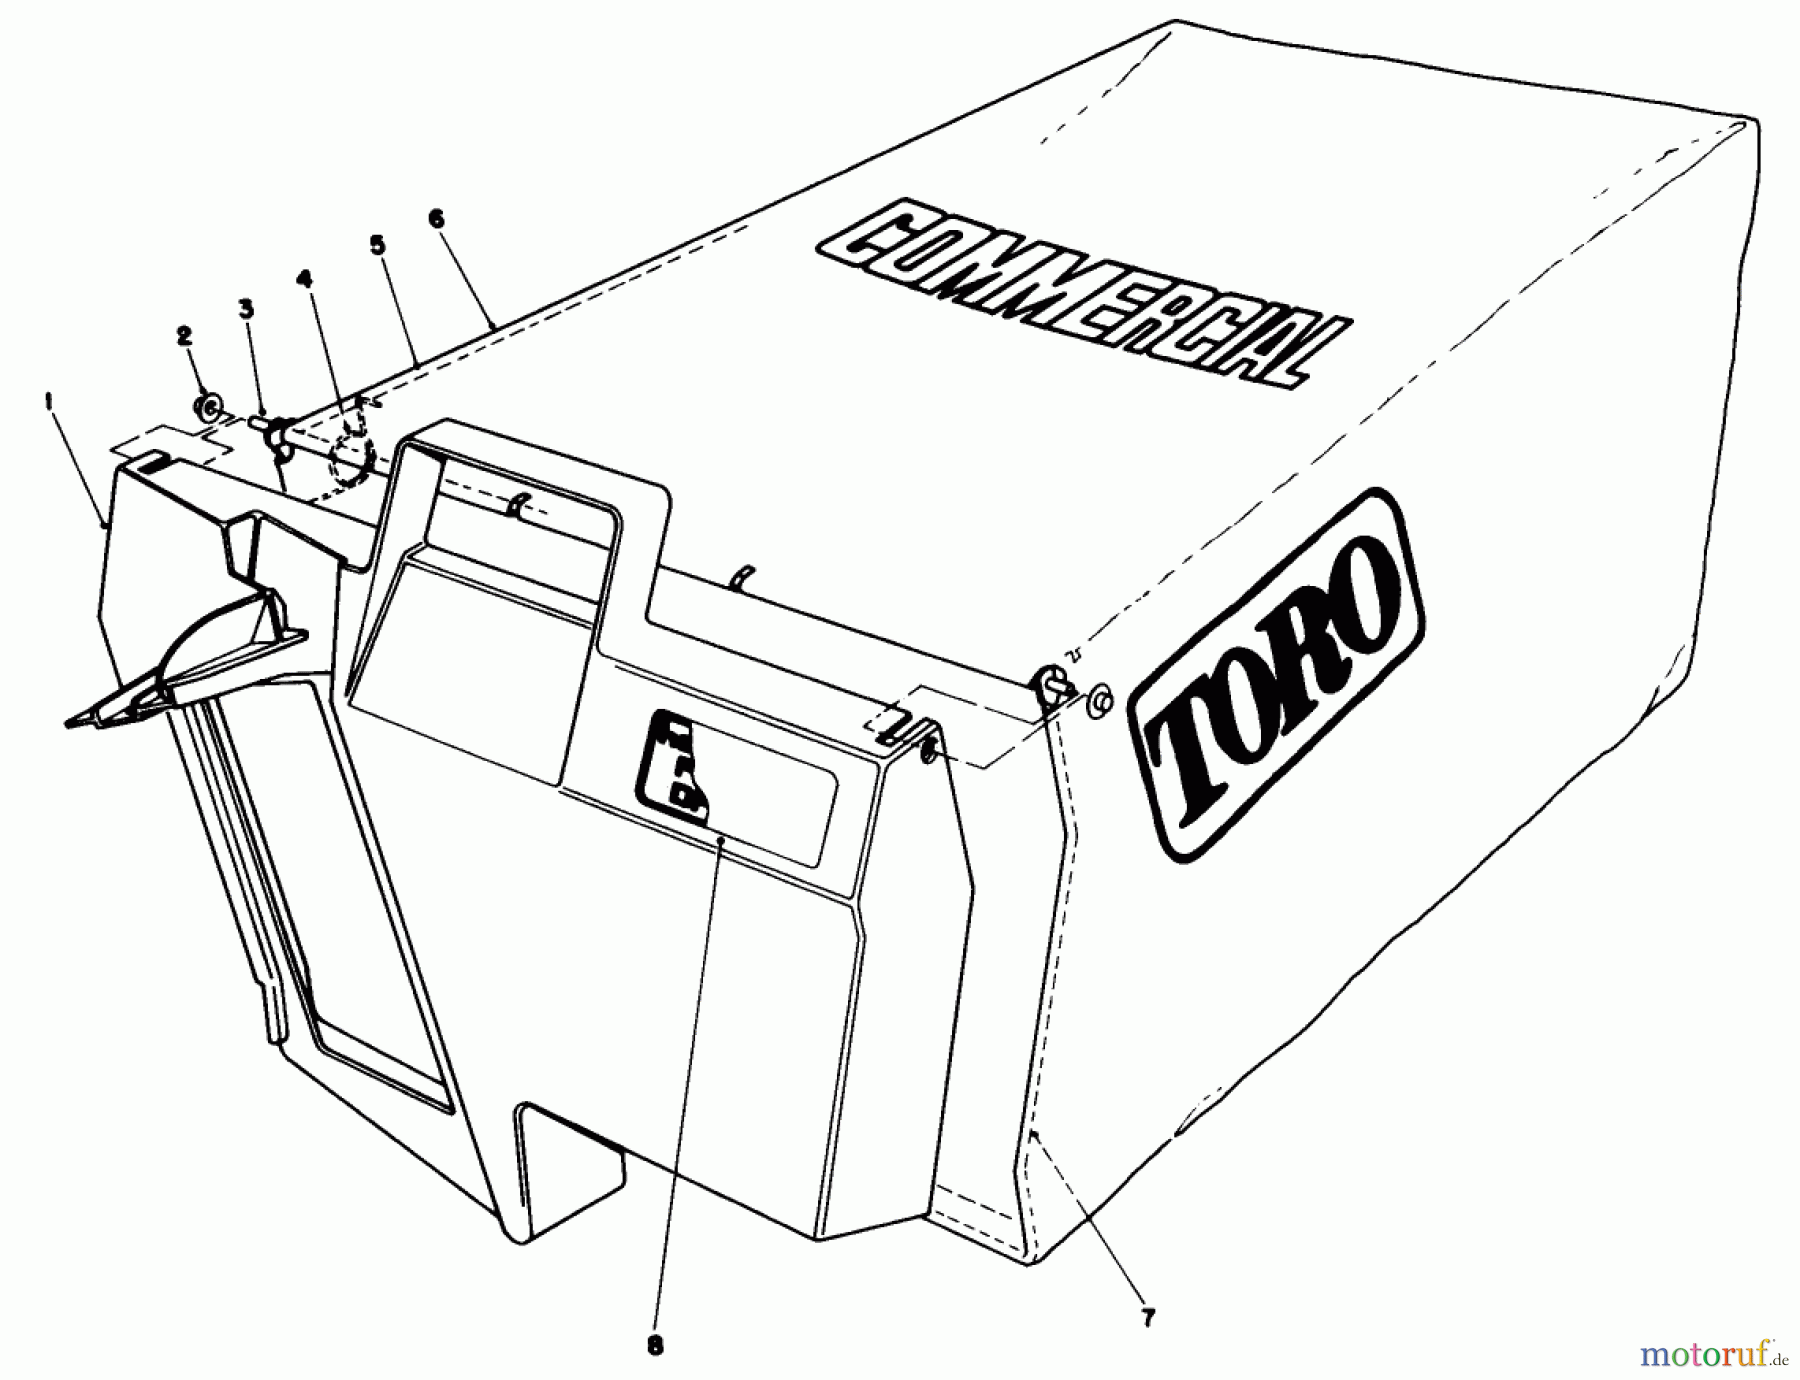  Toro Neu Mowers, Walk-Behind Seite 2 22030 - Toro Lawnmower, 1988 (8000001-8999999) GRASS BAG ASSEMBLY NO. 11-5609